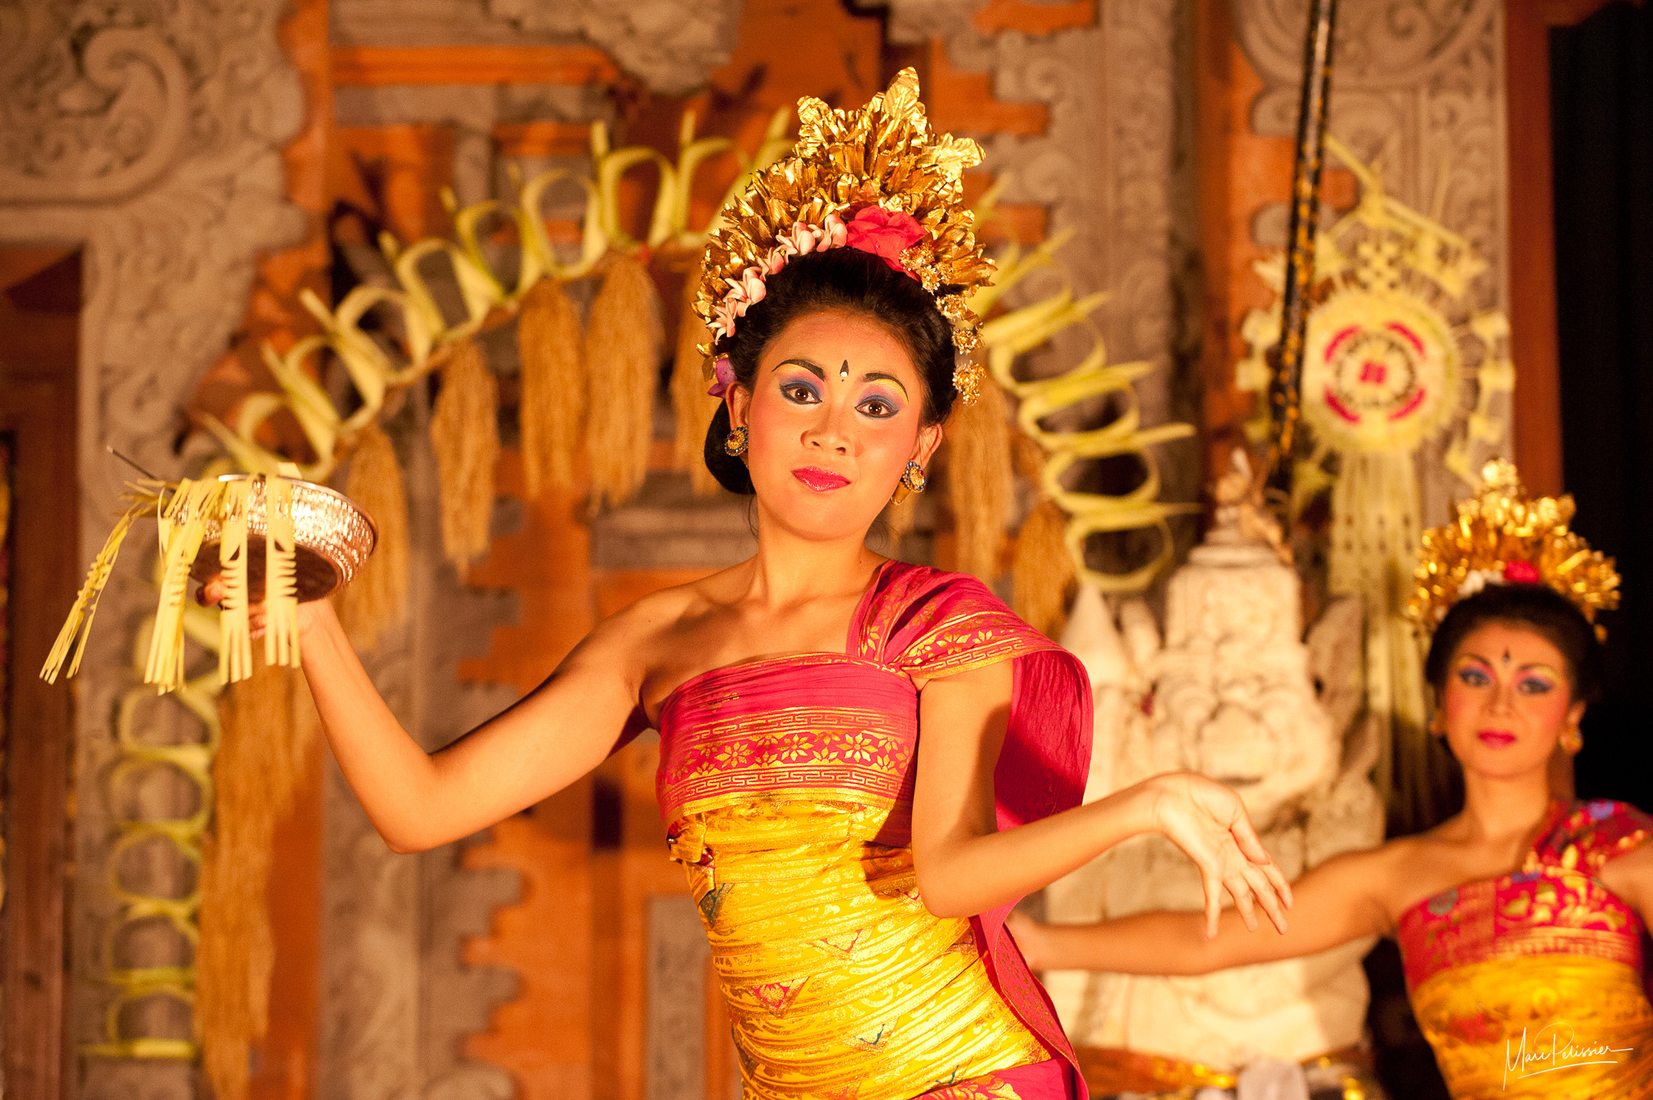 Ubud palace dance, Indonesia